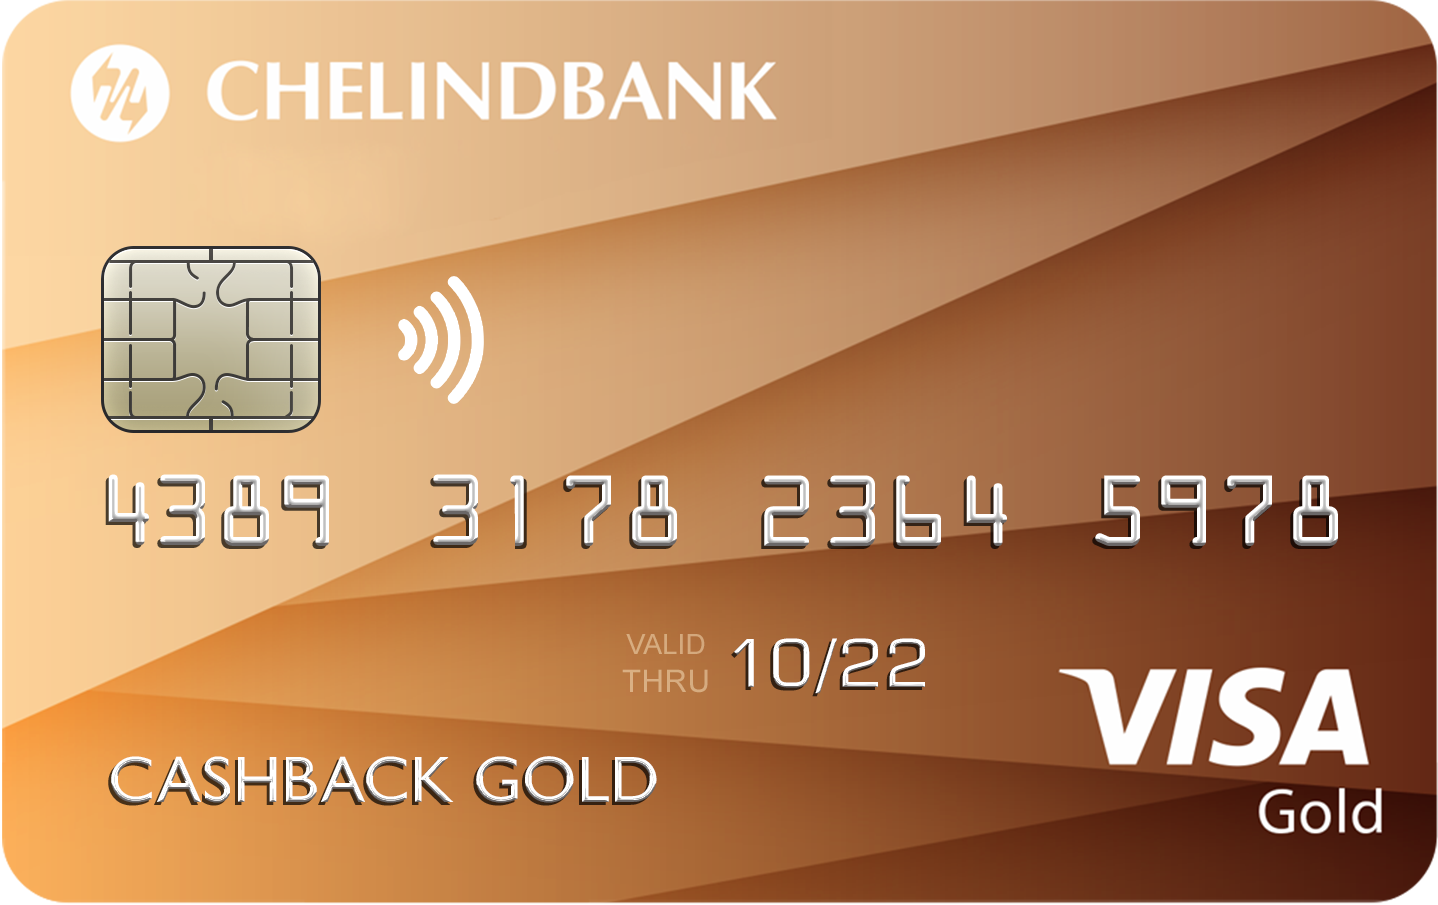 Клиенты, открывшие счет и оформившие дебетовую карту Visa Gold «Золотой кэшбэк» Челиндбанка в пер